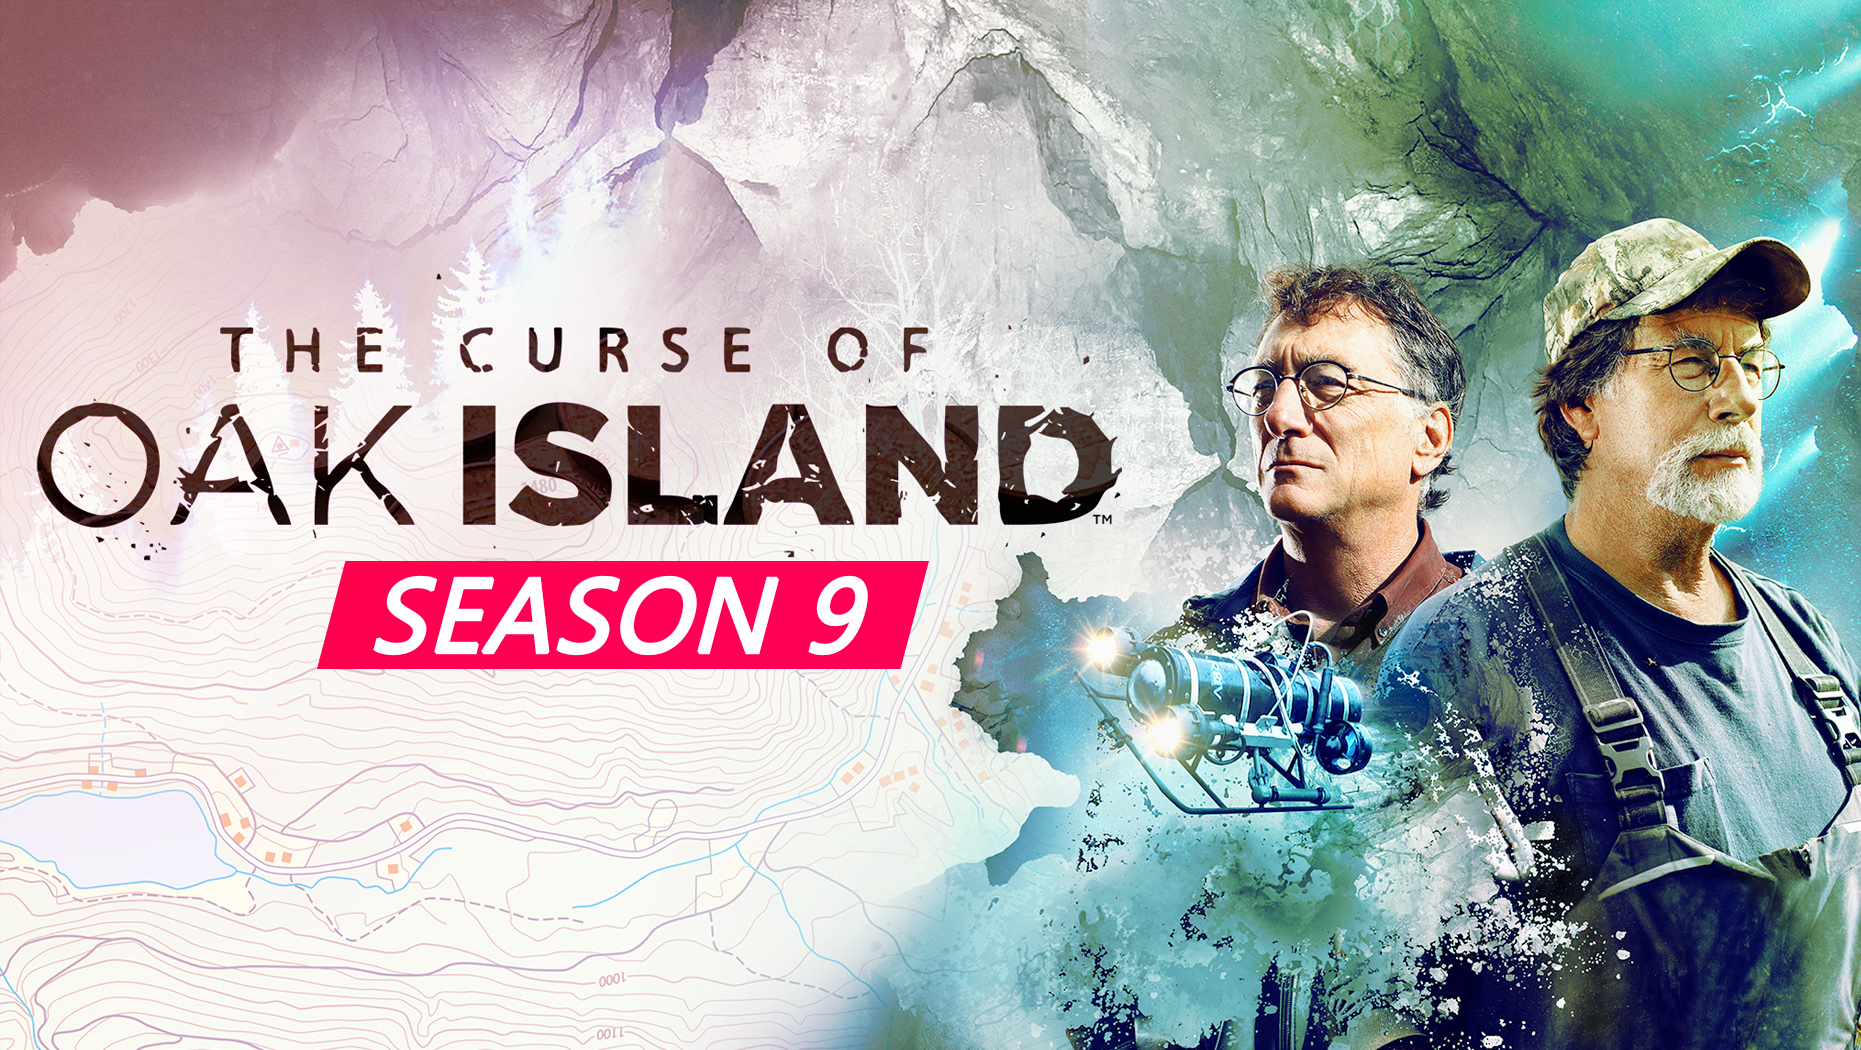 Curse of oak island season 11